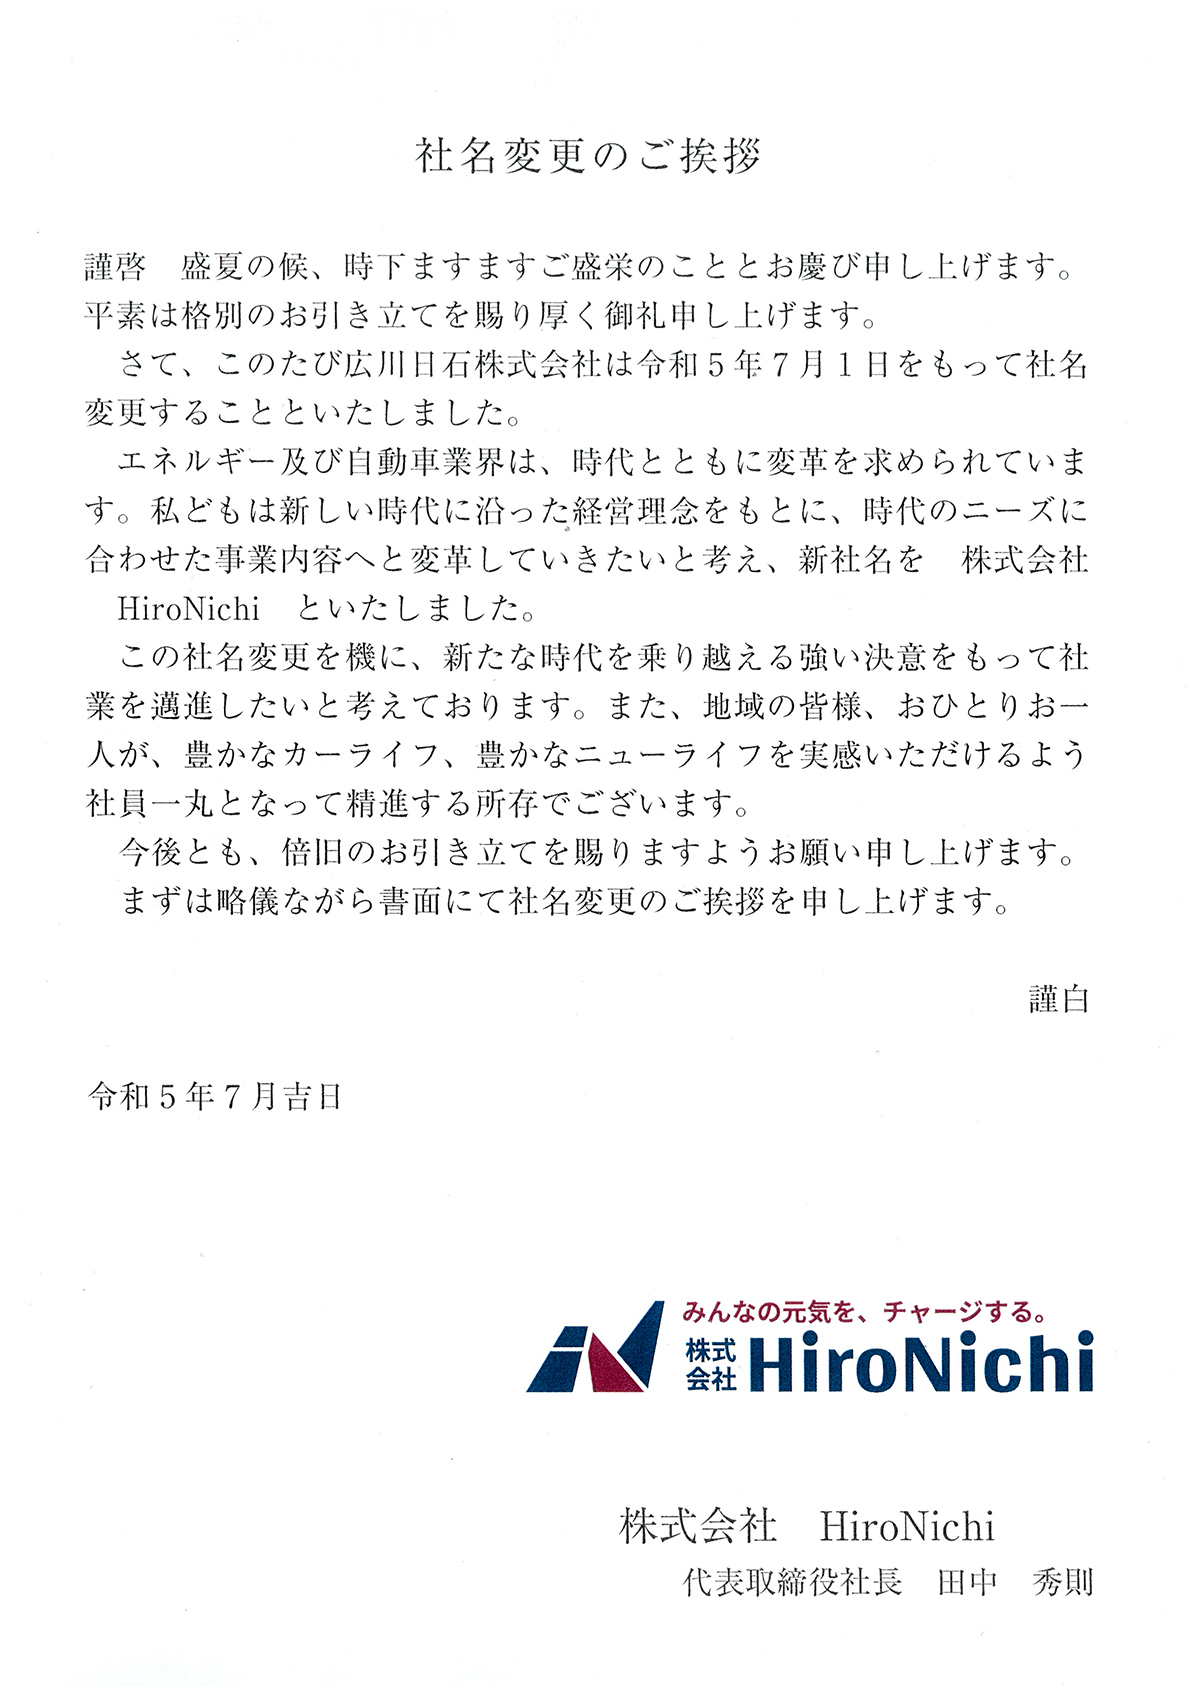 広川日石株式会社から株式会社HiroNichiへ社名変更しました